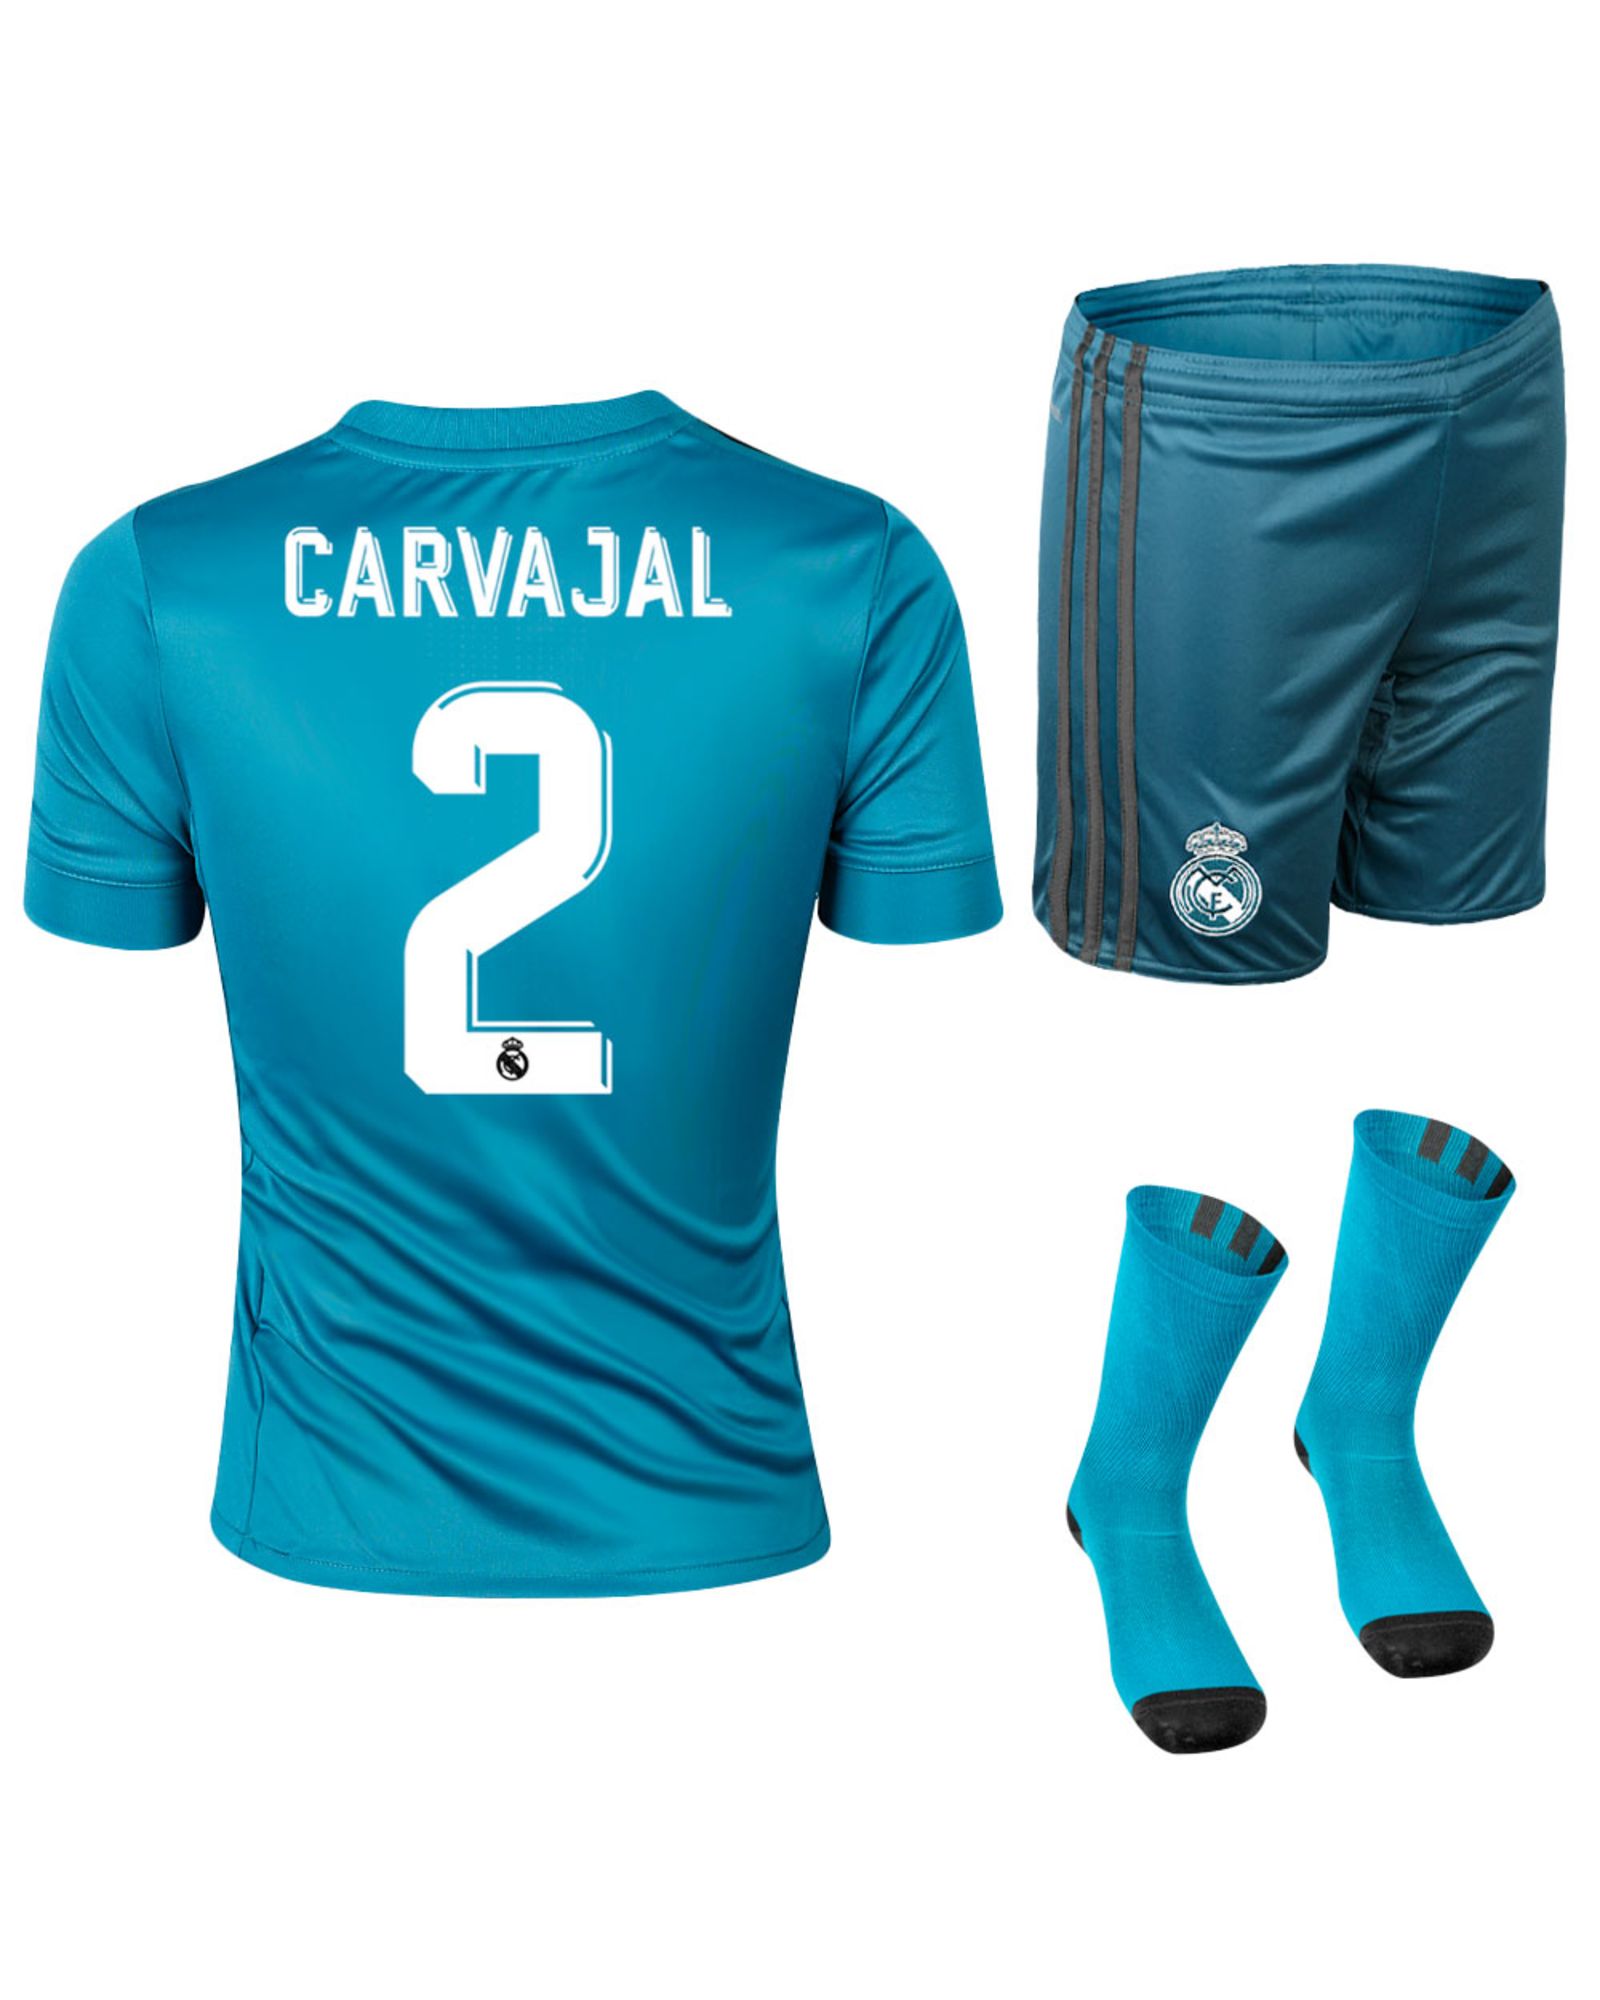 Conjunto 3ª Real Madrid 2017/2018 Carvajal Junior Azul - Fútbol Factory